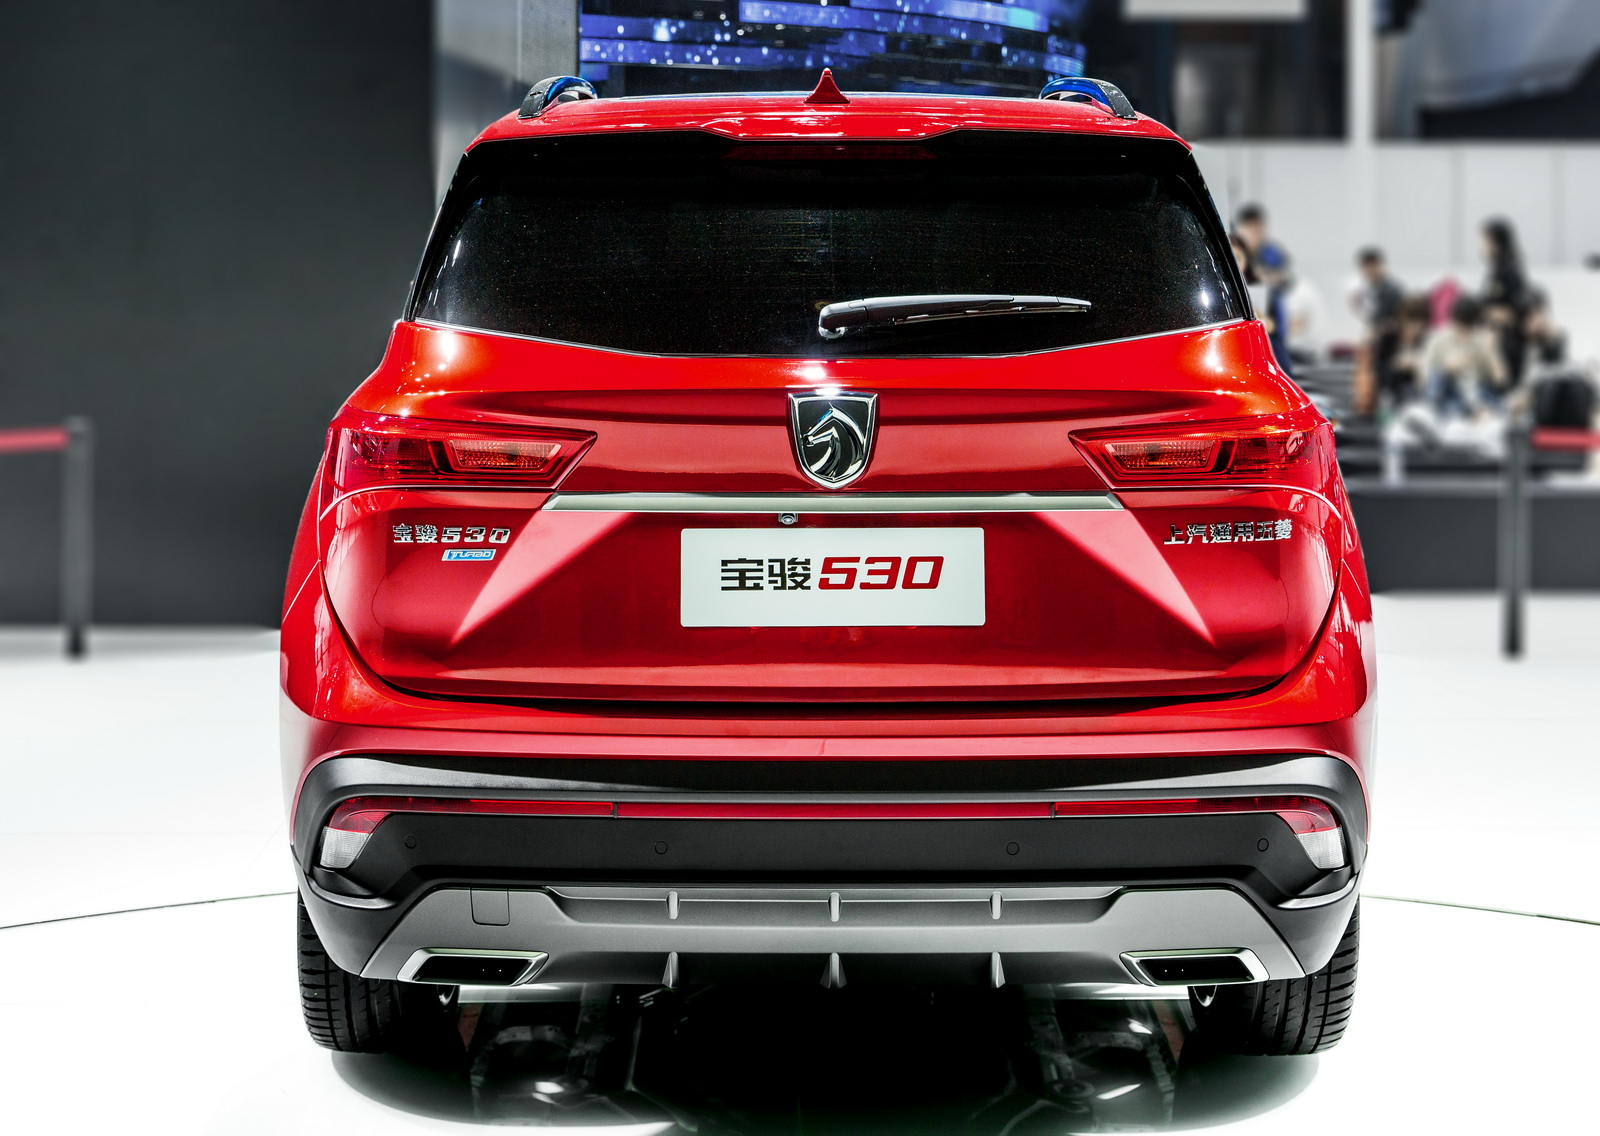 Xe++ - Ấn tượng chiếc SUV giá rẻ Baojun 530 đến từ Trung Quốc (Hình 4).